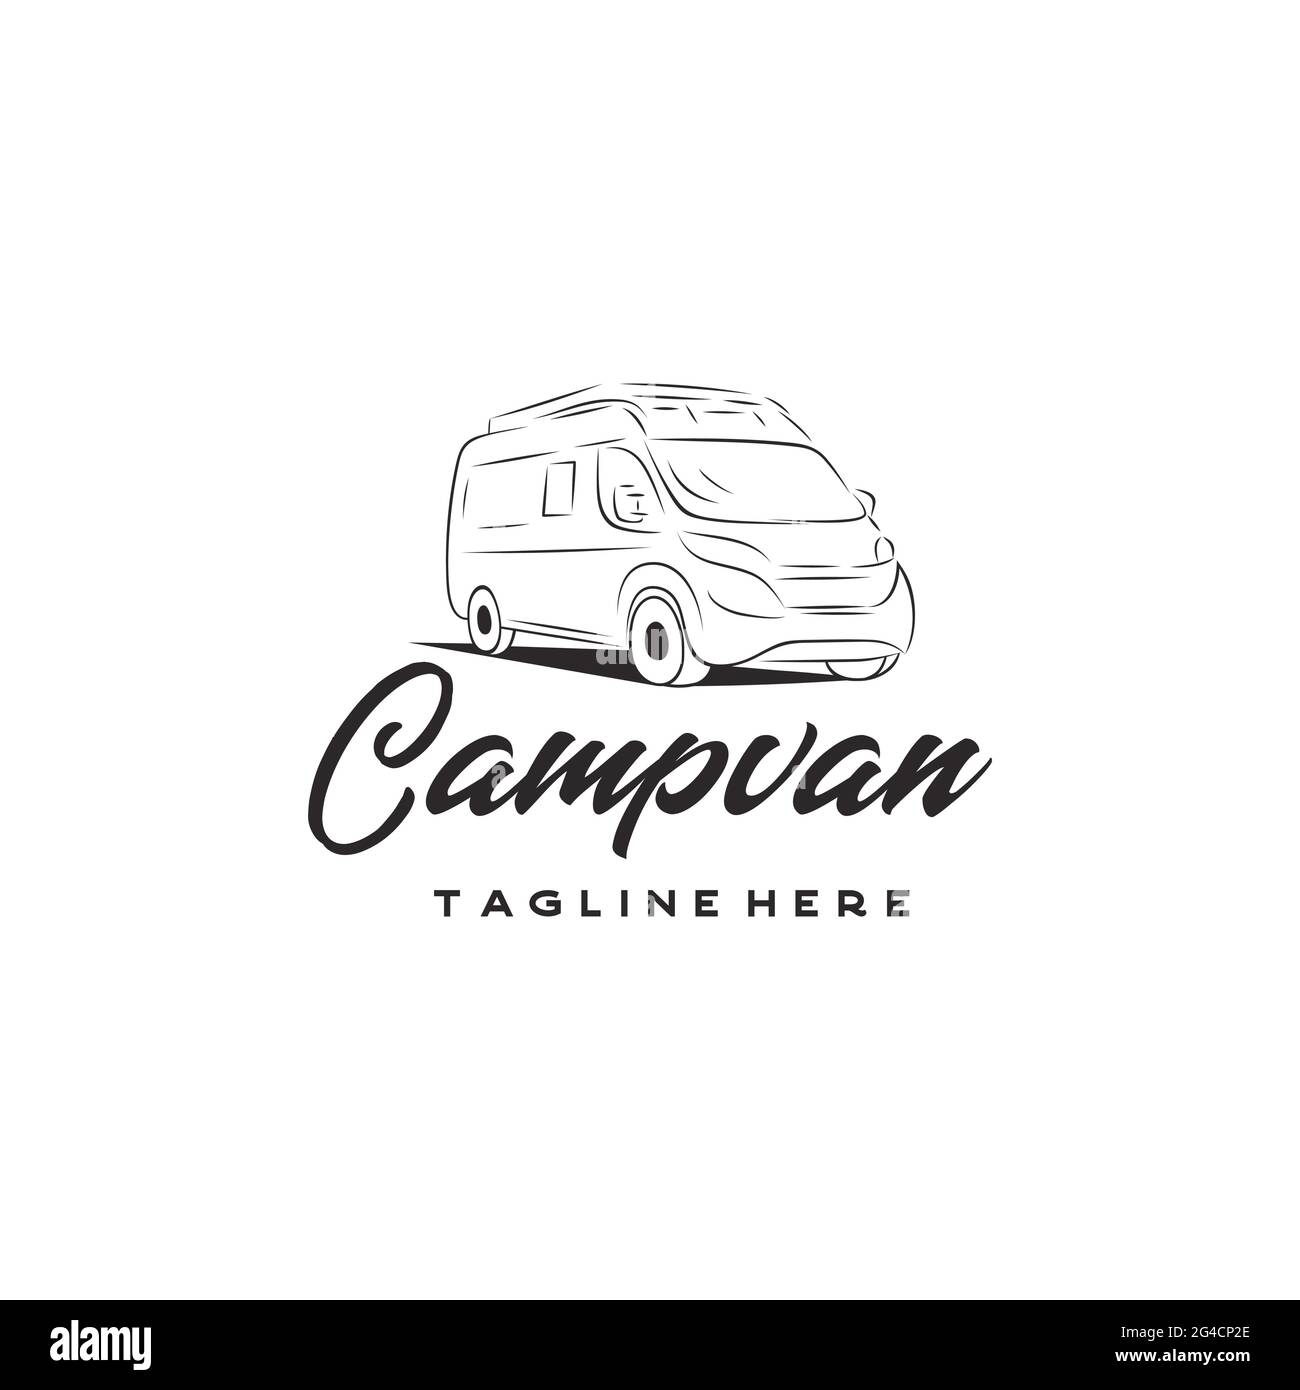 Camper van logo, emblems and badges. Recreational vehicle illustration ...